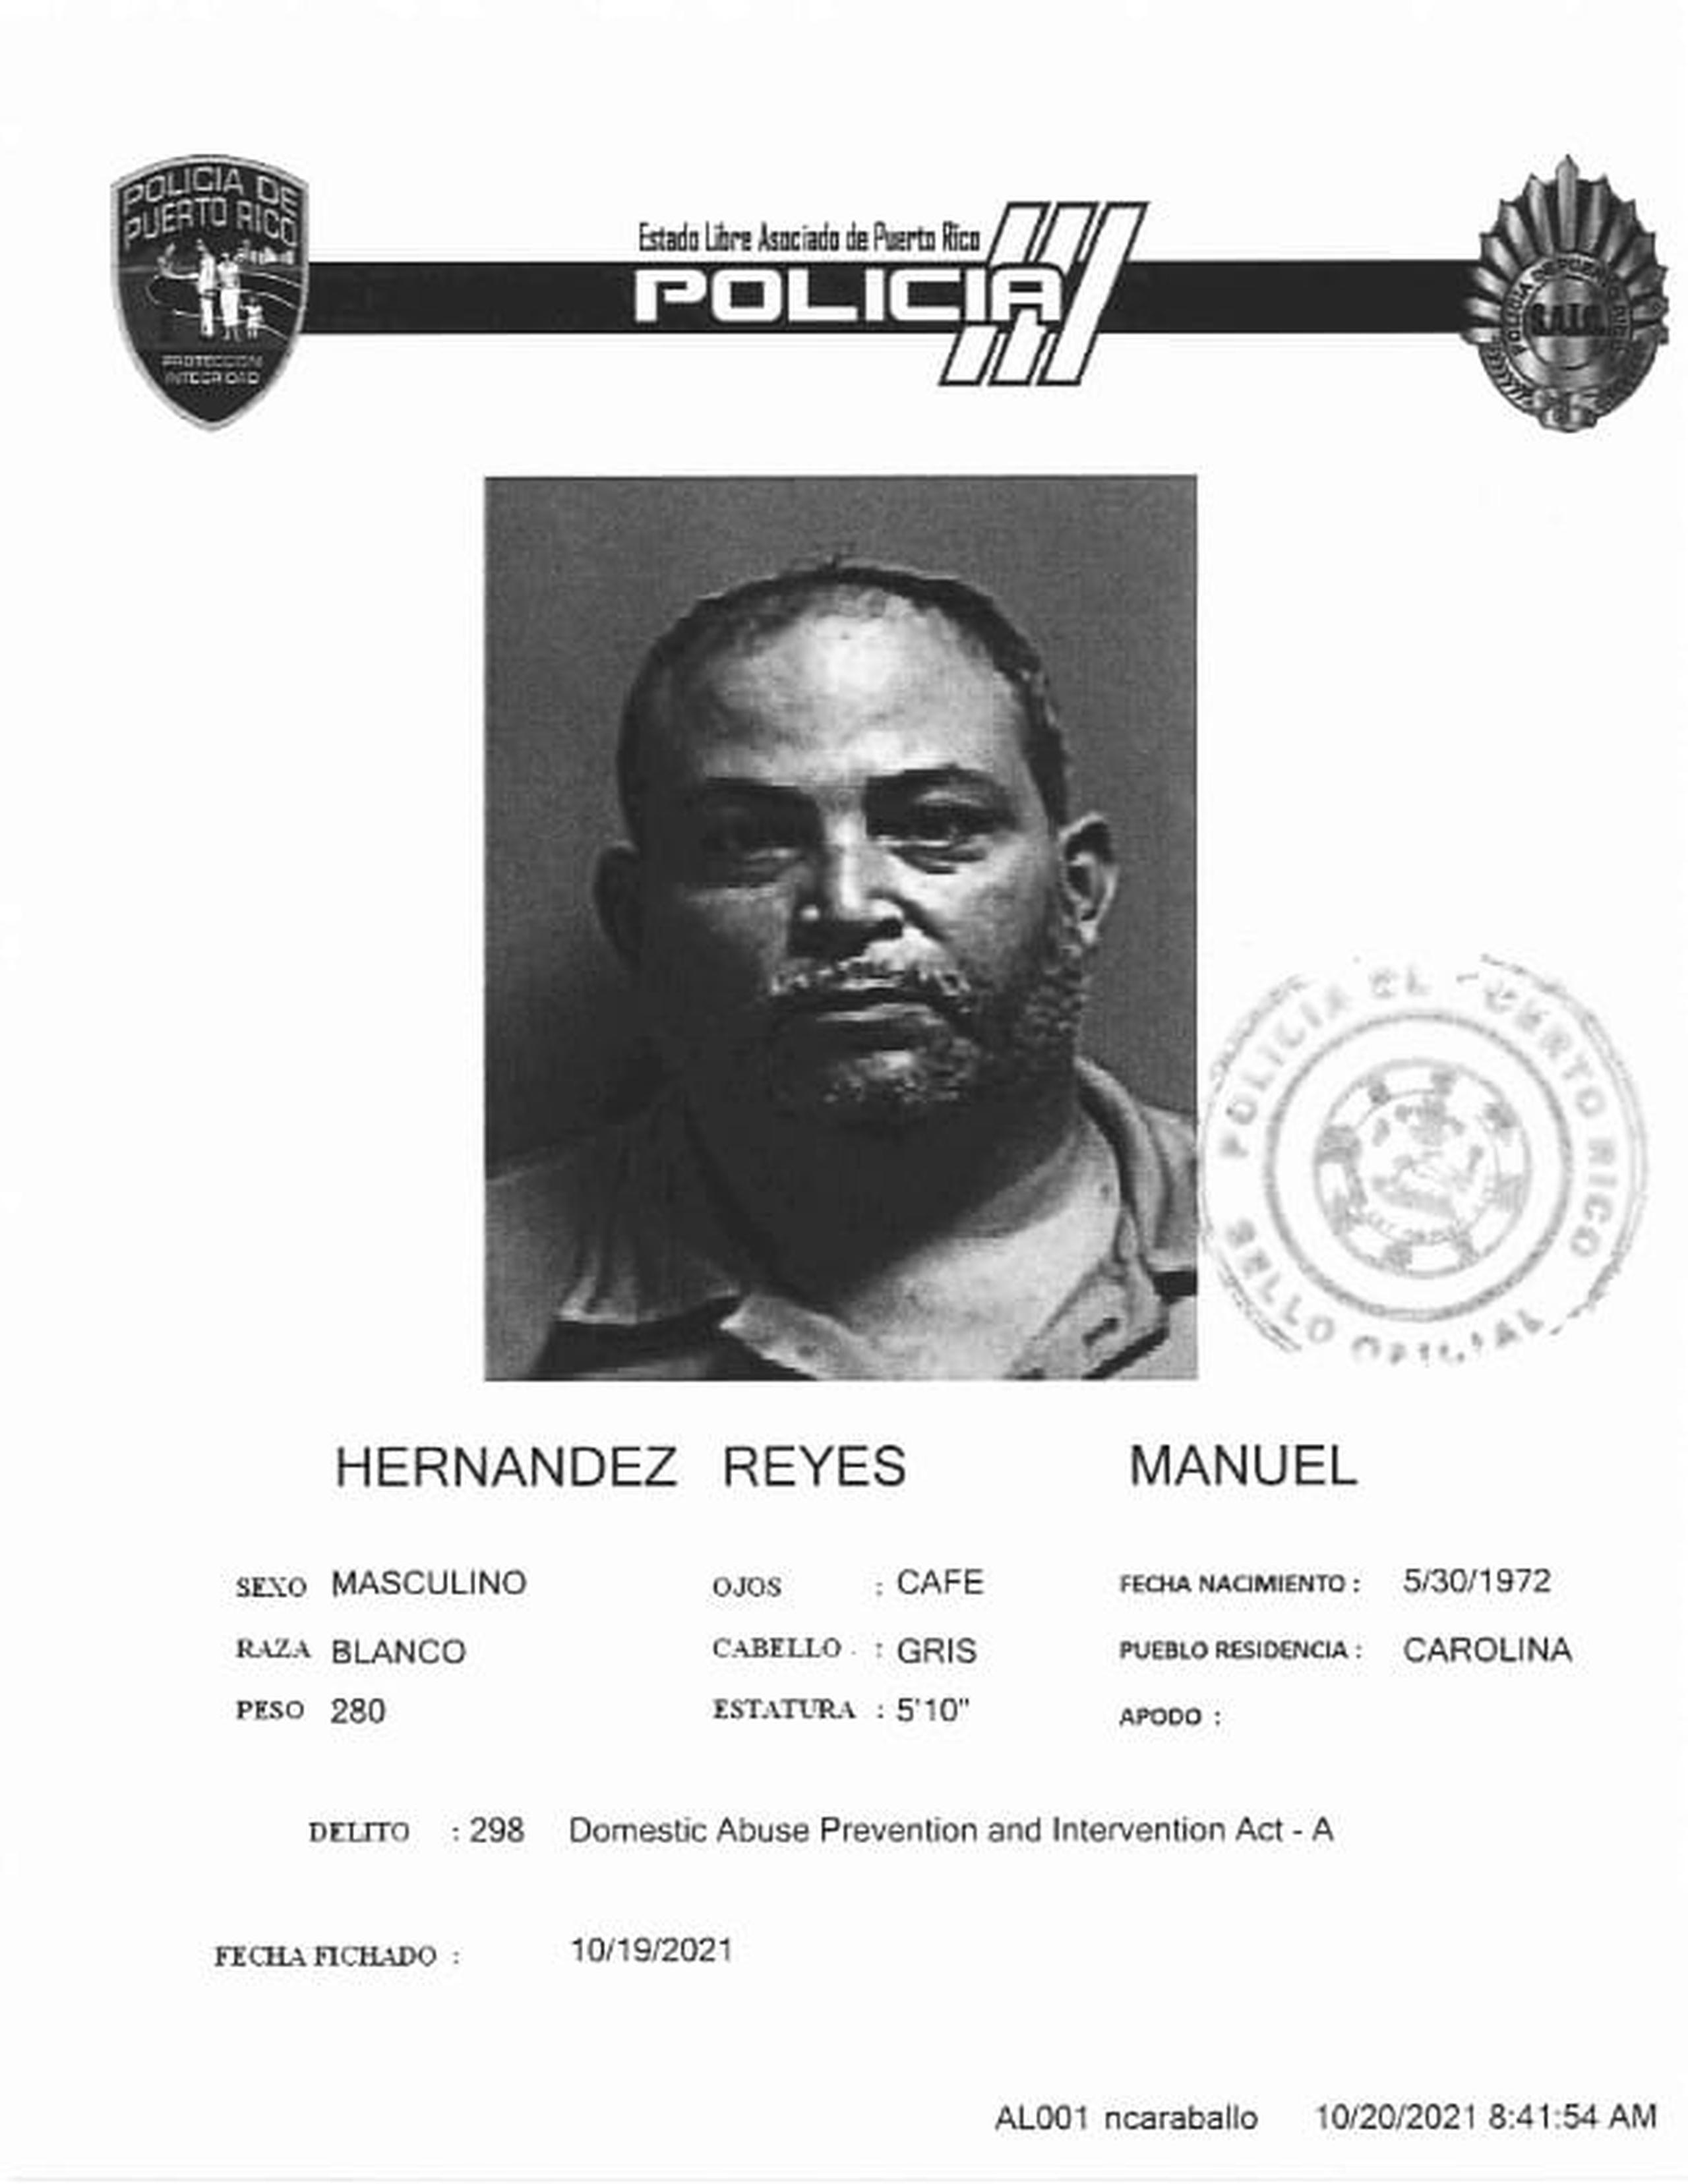 Manuel Hernández Reyes fue encarcelado al no prestar una fianza de $20,000.00, tras ser acusado por violencia doméstica contra su expareja.